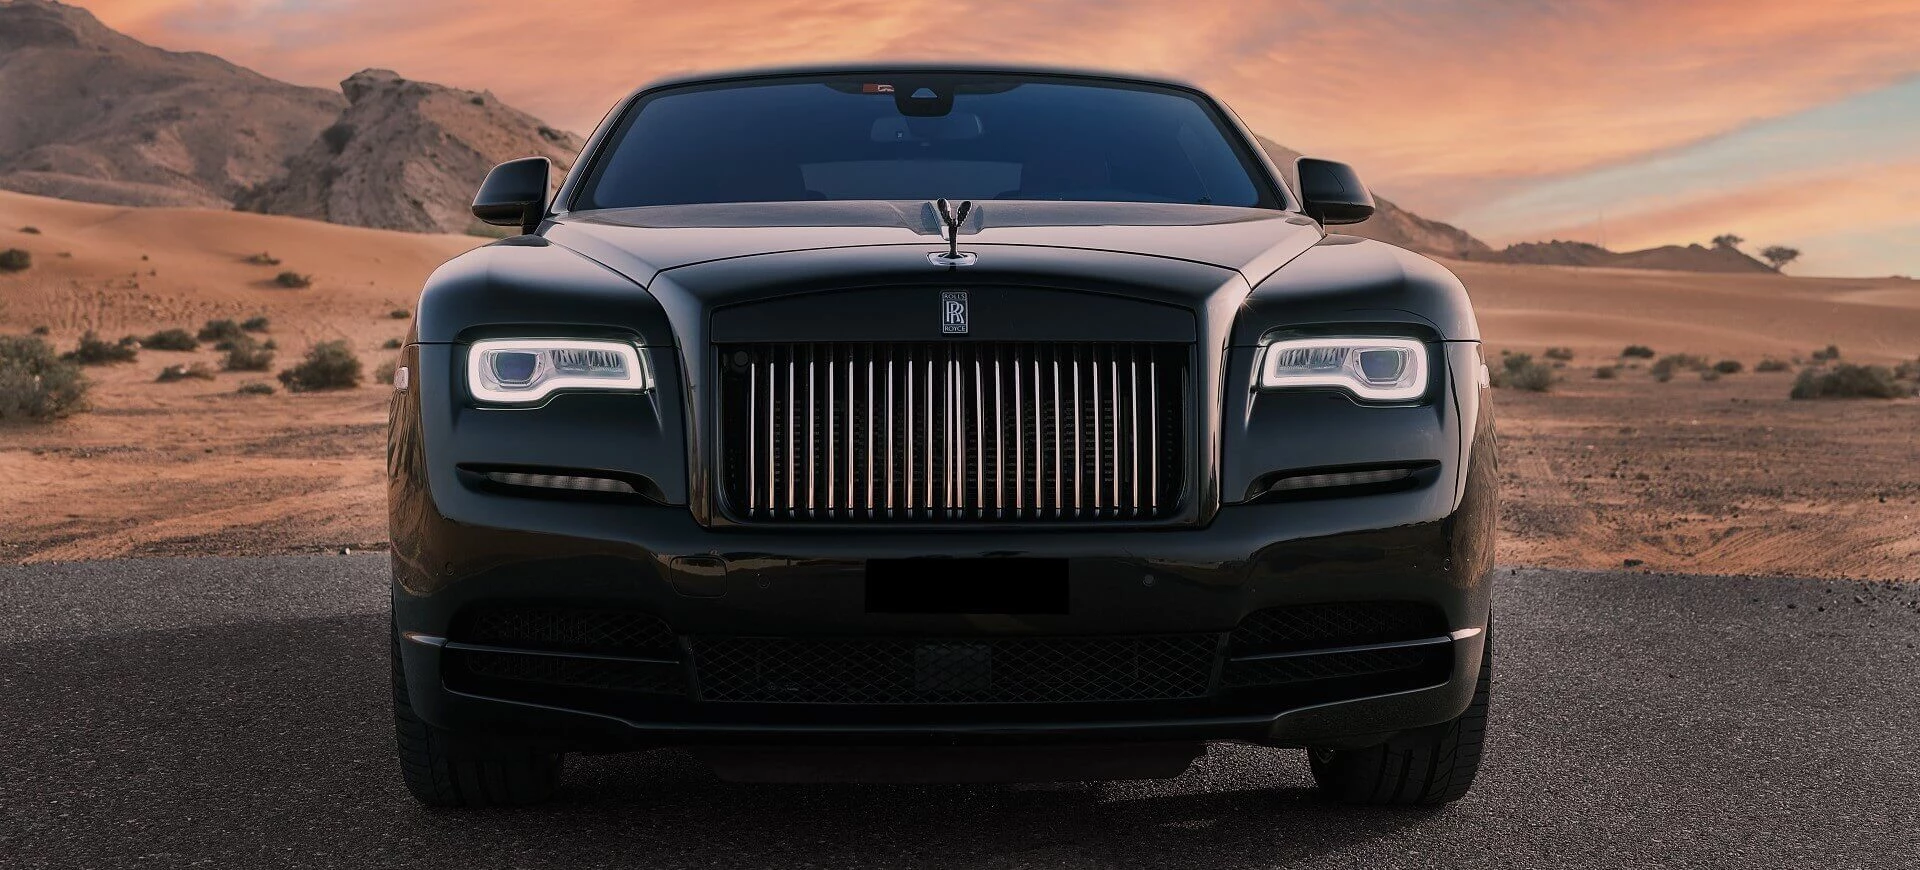 Rolls Royce Wraith mieten in Dubai